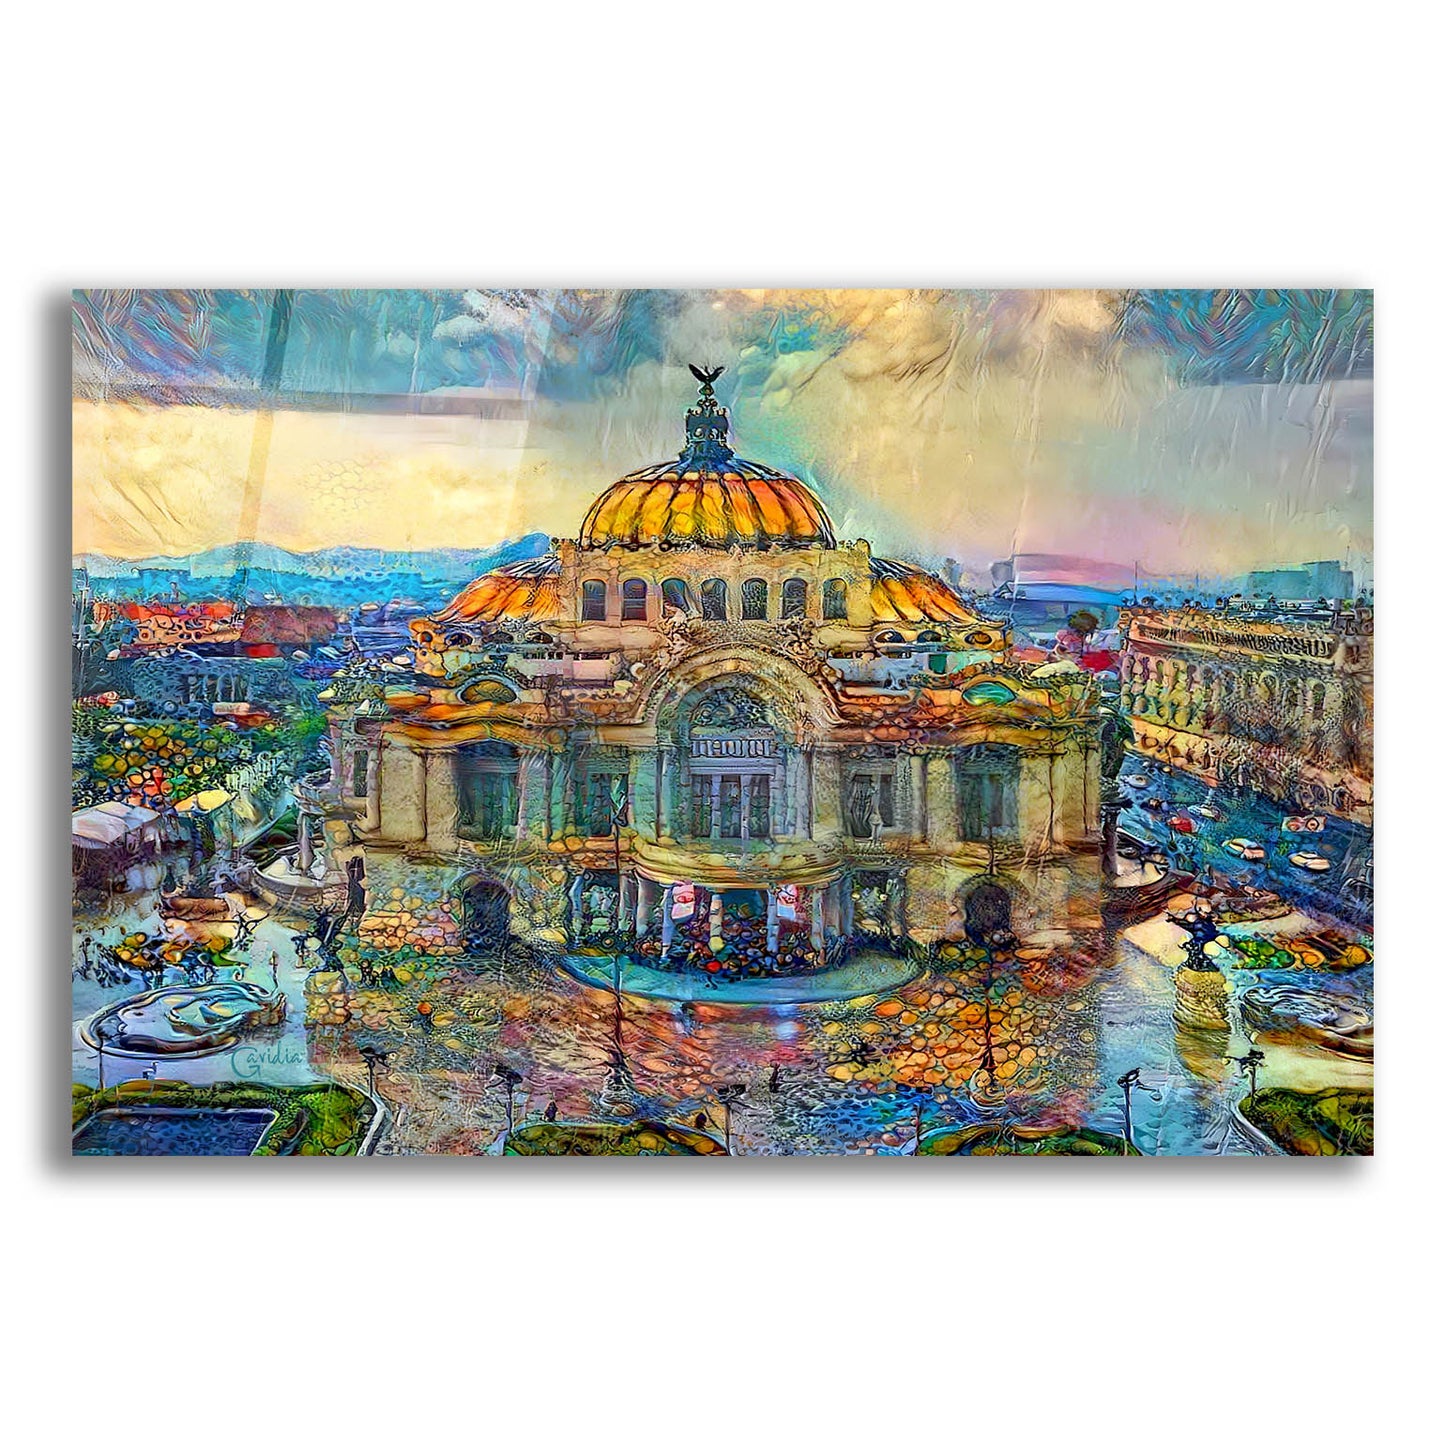 Epic Art 'Mexico City Palace of Fine Arts in the rain' by Pedro Gavidia, Acrylic Glass Wall Art,24x16